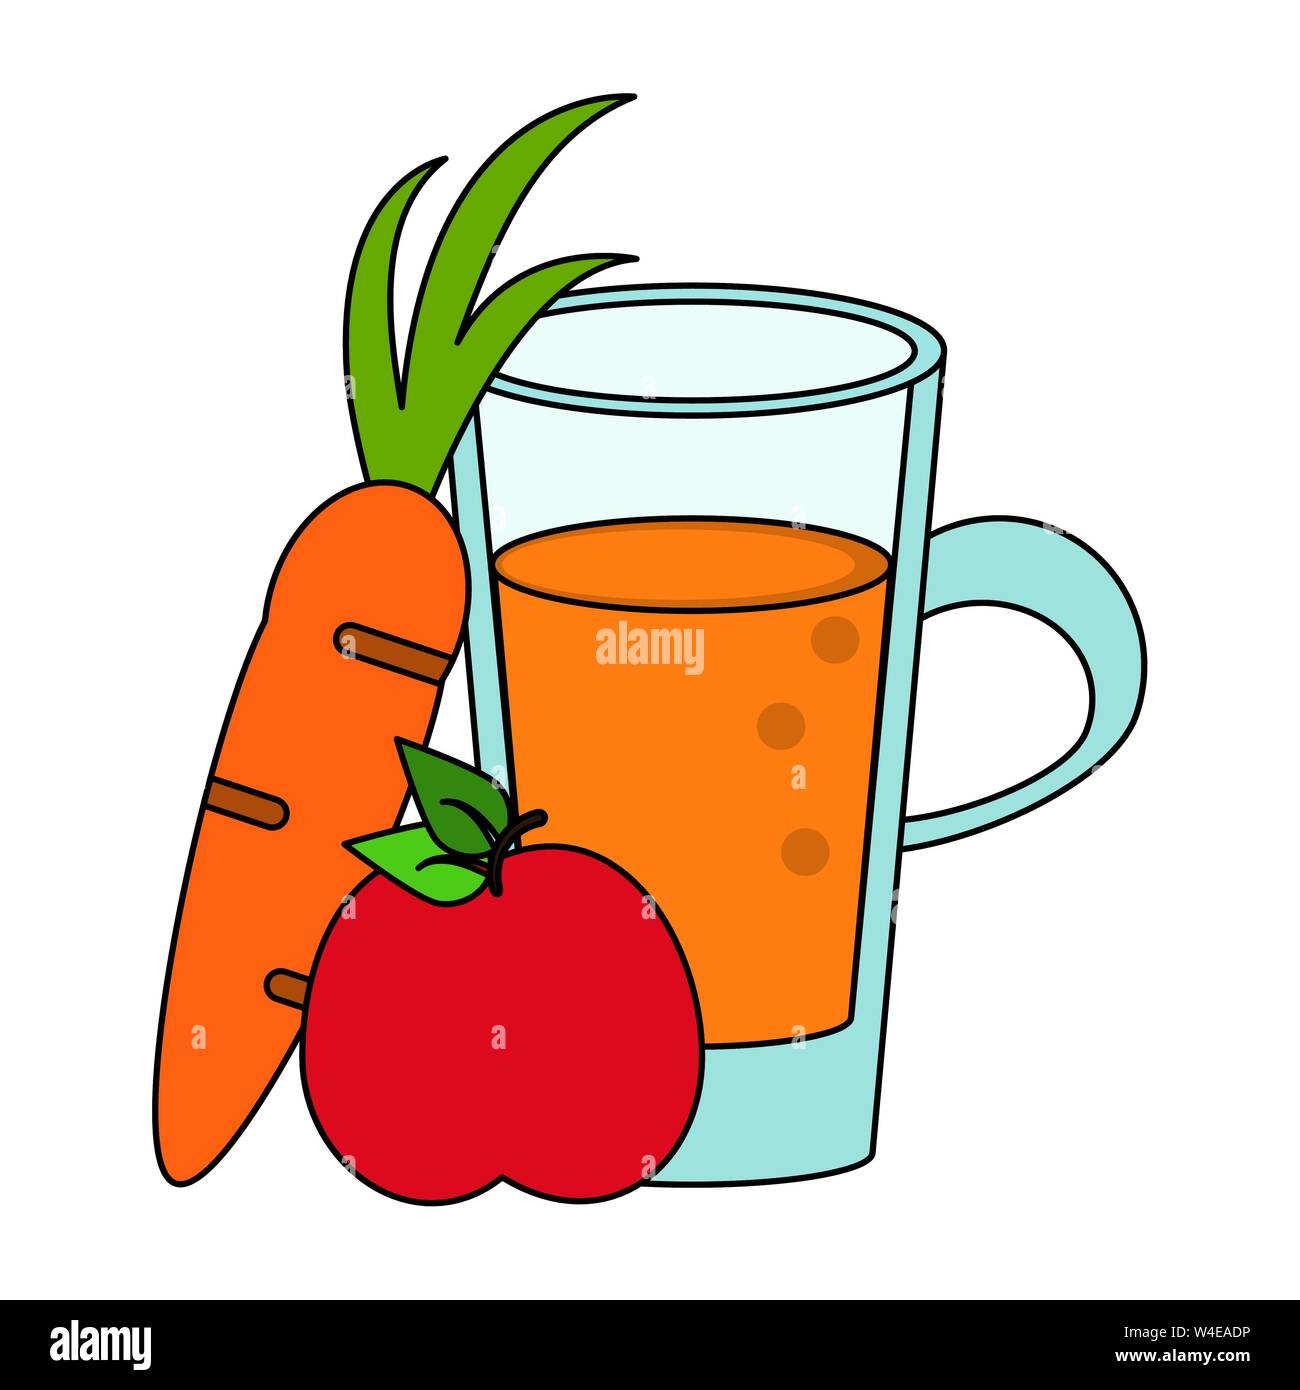 healthy drink juice nature cartoon Stock Vector Image & Art - Alamy